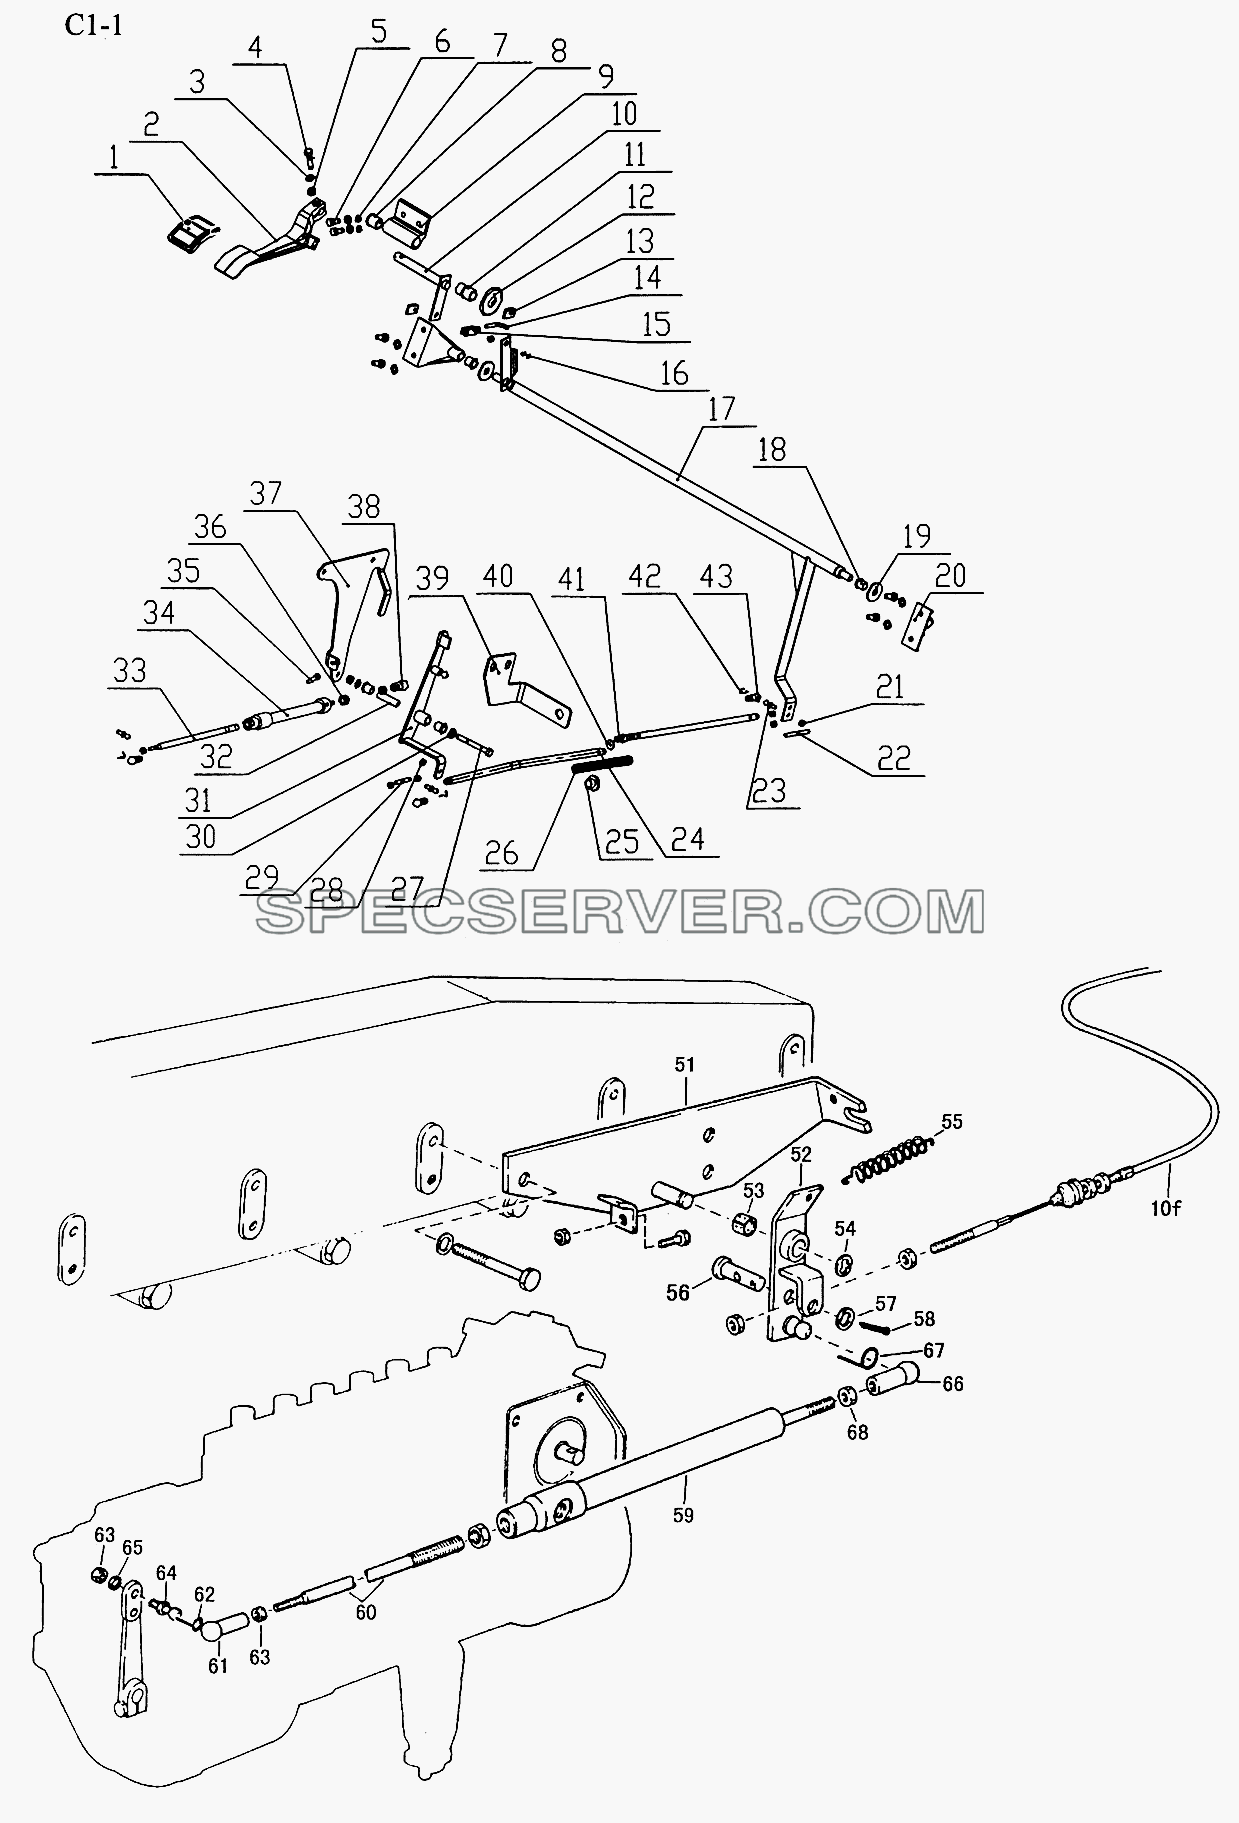 OPERATION DEVICE (C1-1) для Sinotruk 4x2 Tractor (371) (список запасных частей)